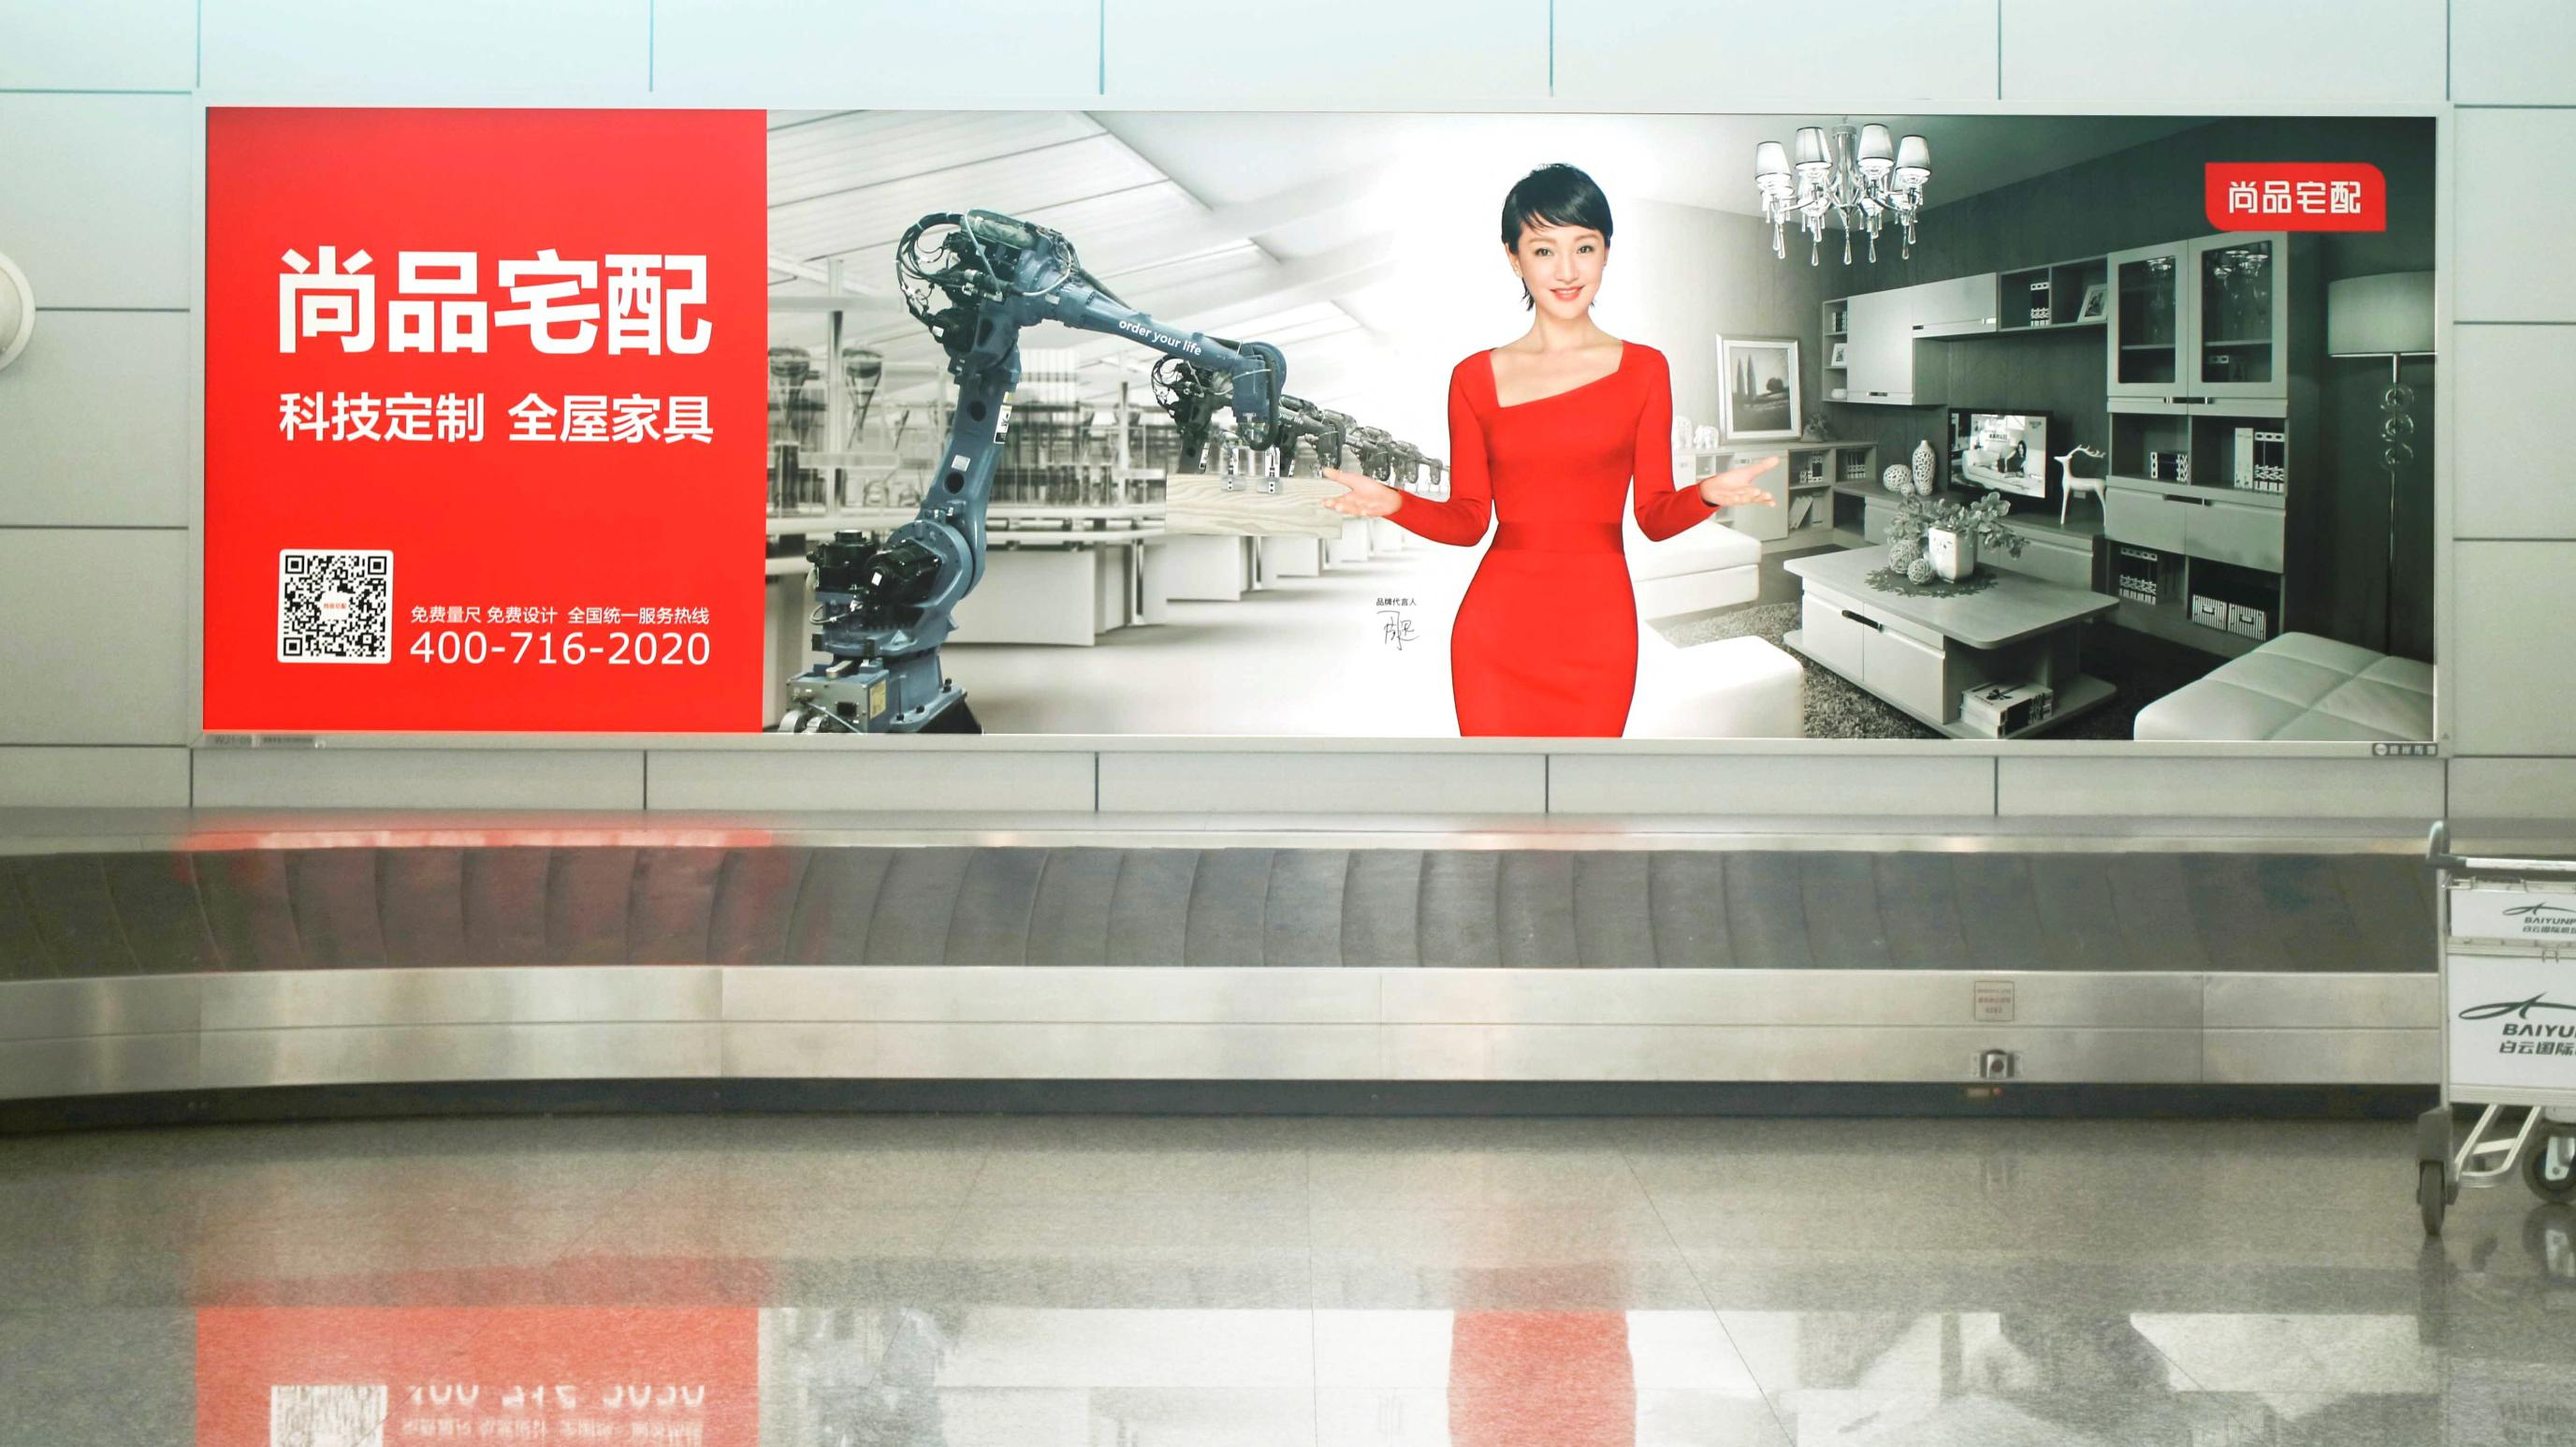 广州白云机场广告|品牌推广|机场广告|飞机广告|品牌策划|品牌设计公司